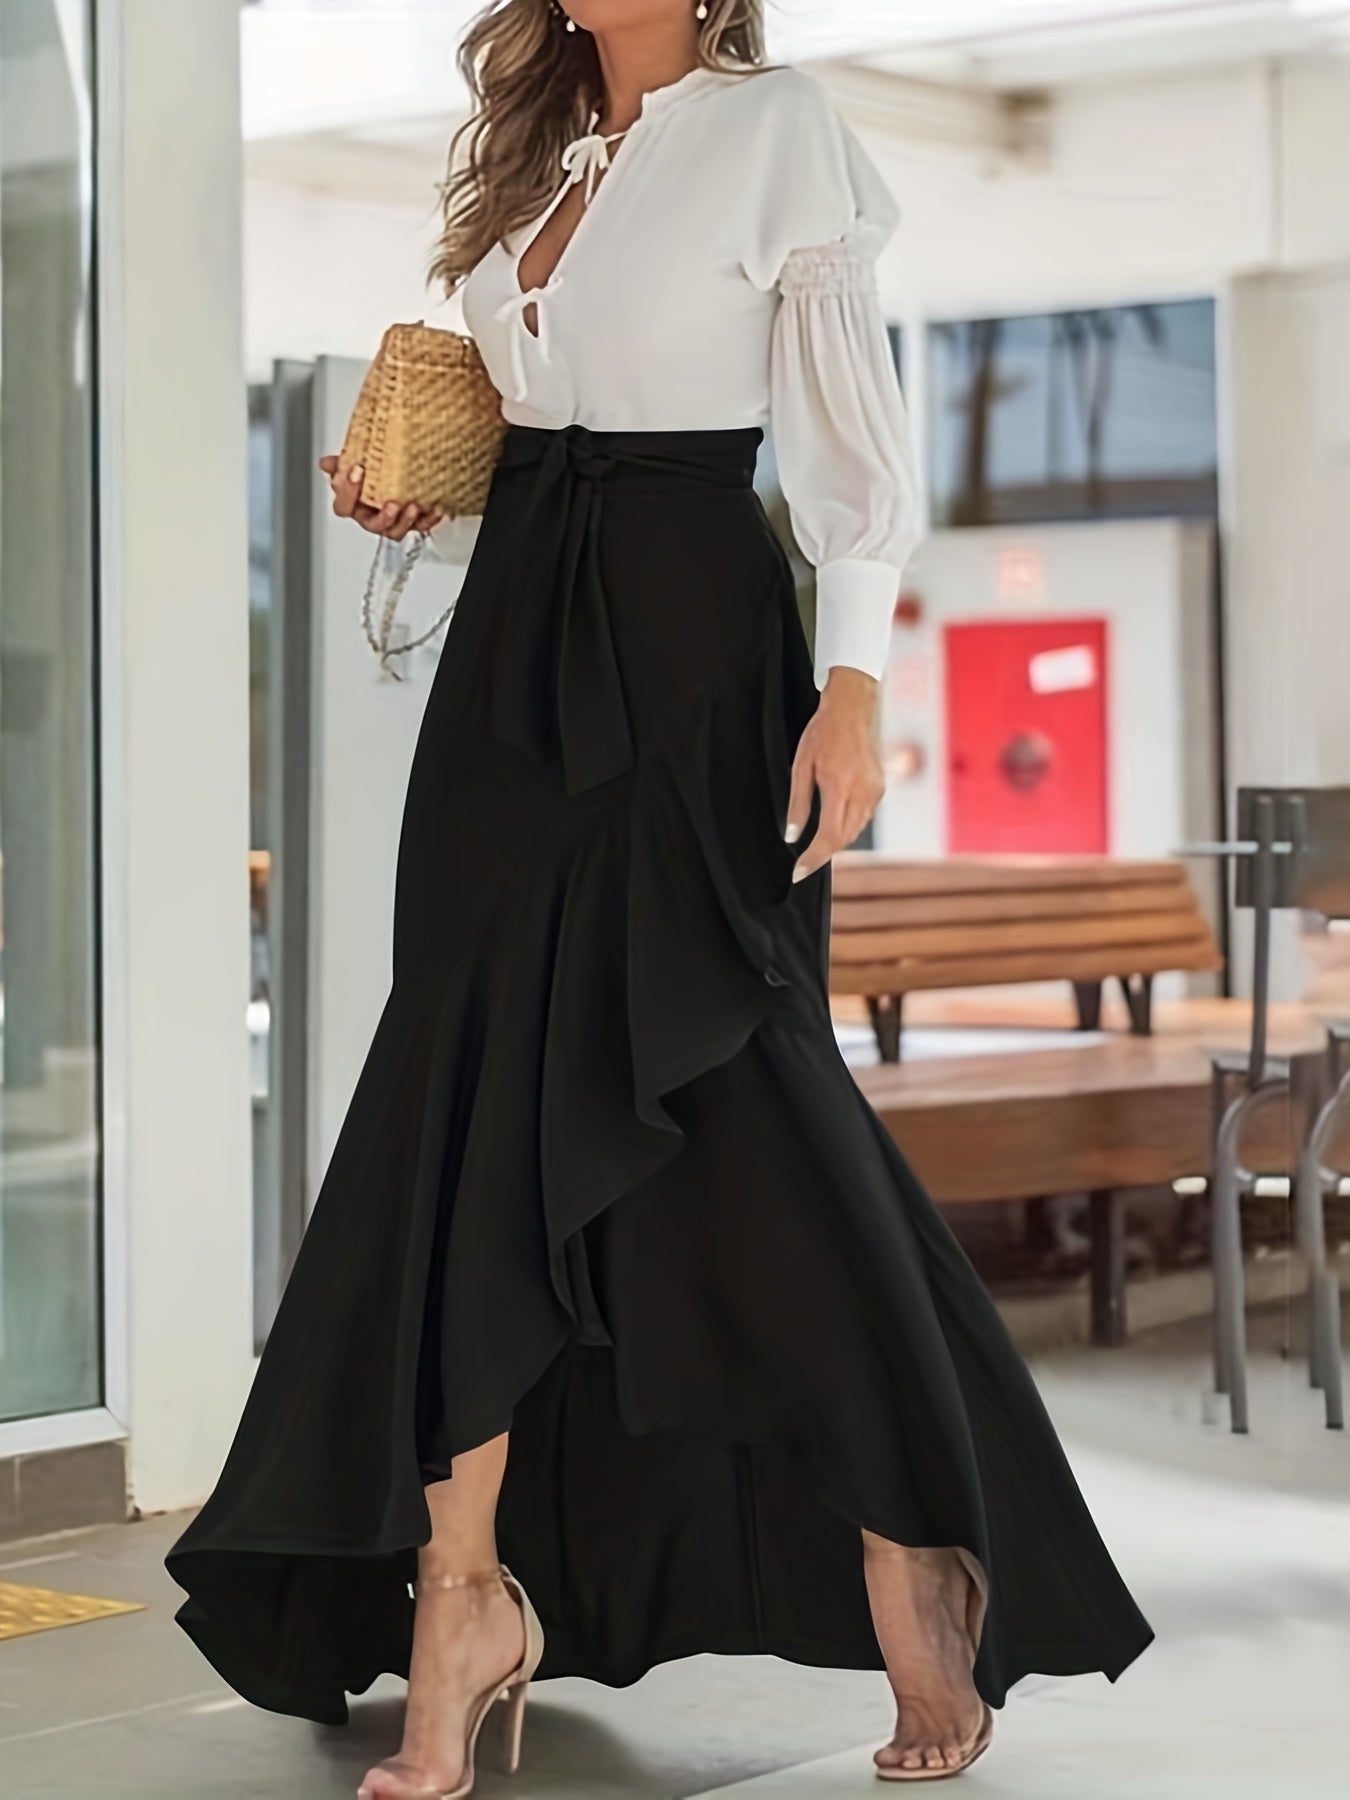 vlovelaw  Solid Ruffle Trim Asymmetrical Skirt, Elegant Belted Mermaid Skirt For Spring & Fall, Women's Clothing